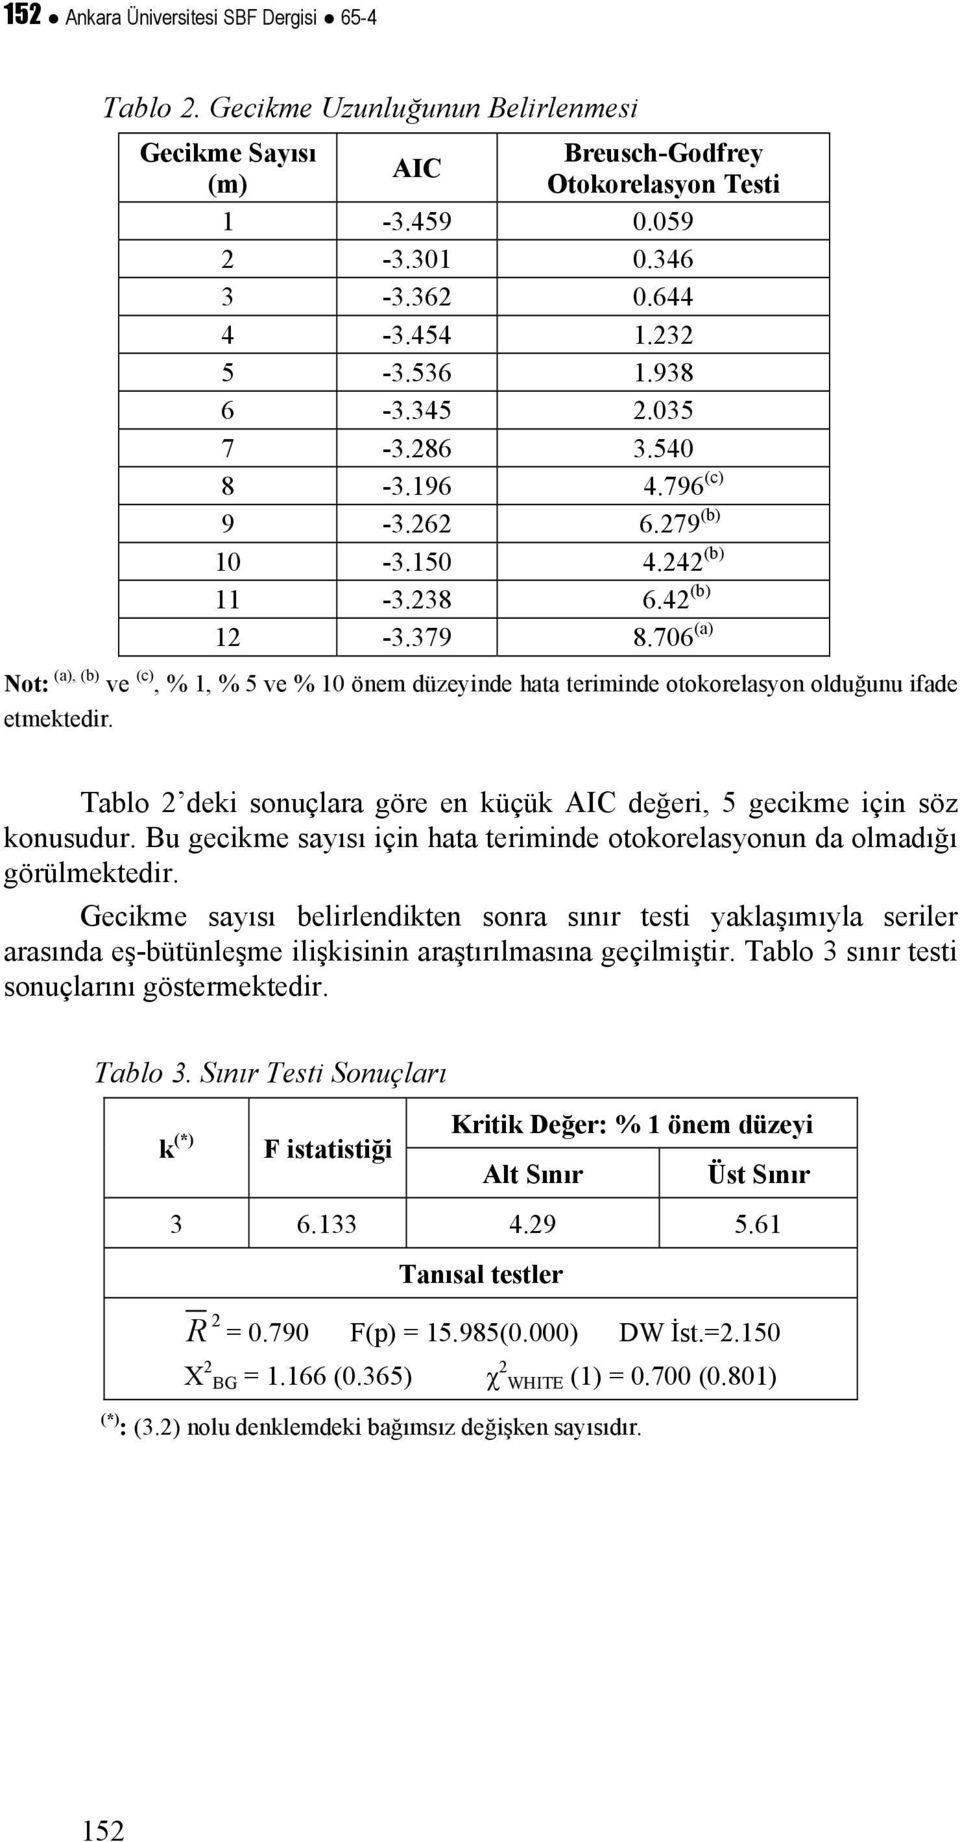 706 (a) Not: (a), (b) ve (c), % 1, % 5 ve % 10 önem düzeyinde hata teriminde otokorelasyon olduğunu ifade etmektedir. Tablo 2 deki sonuçlara göre en küçük AIC değeri, 5 gecikme için söz konusudur.